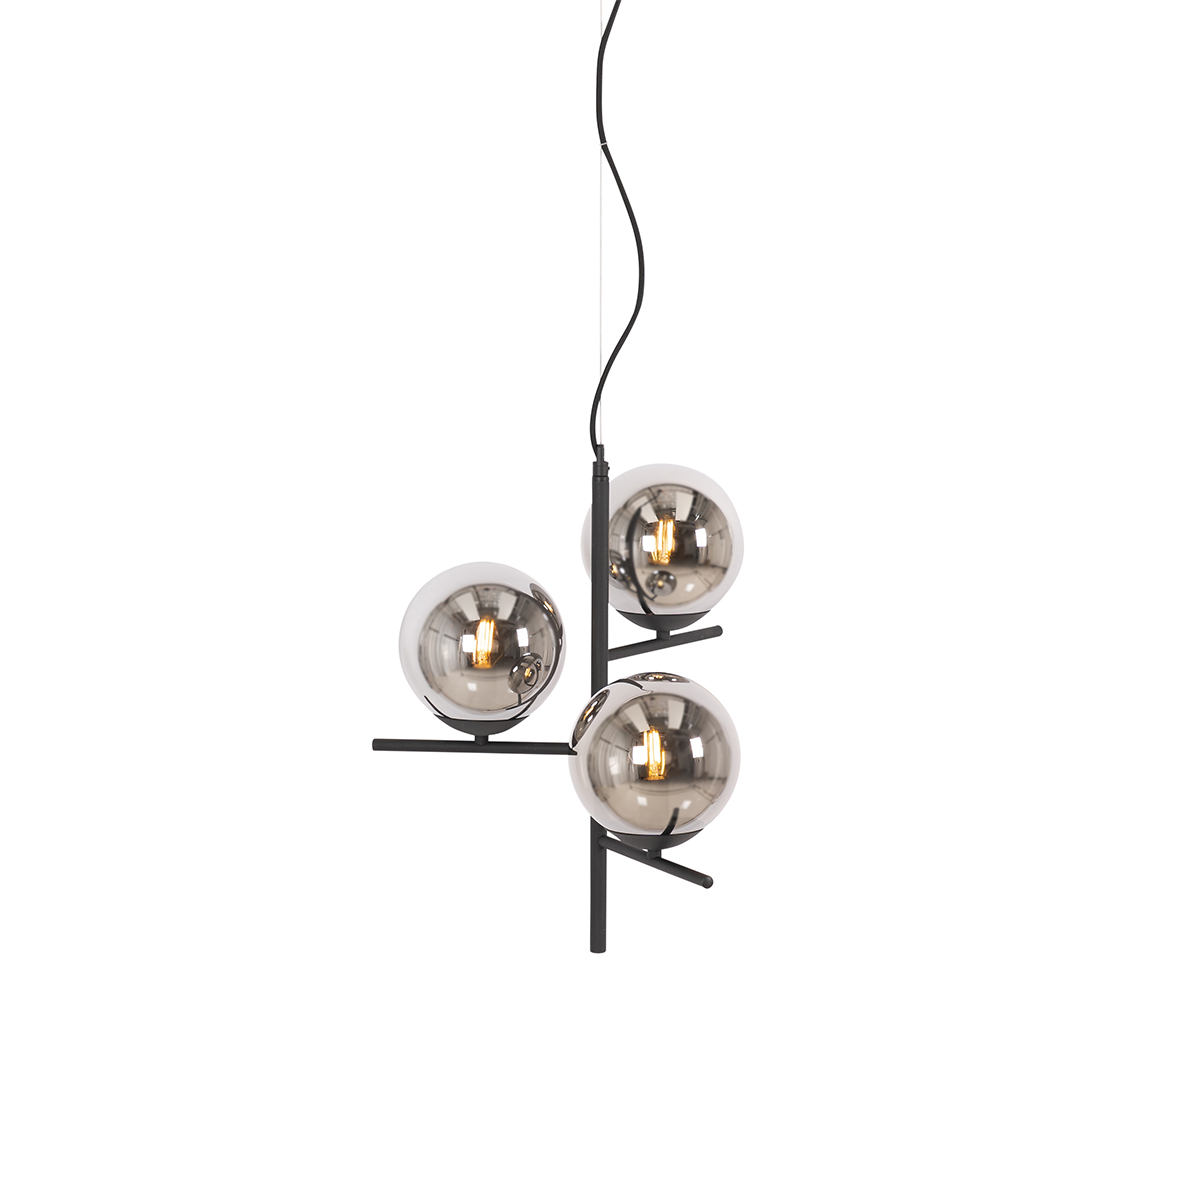 Art deco hanglamp zwart met smoke glas 3-lichts - Flore